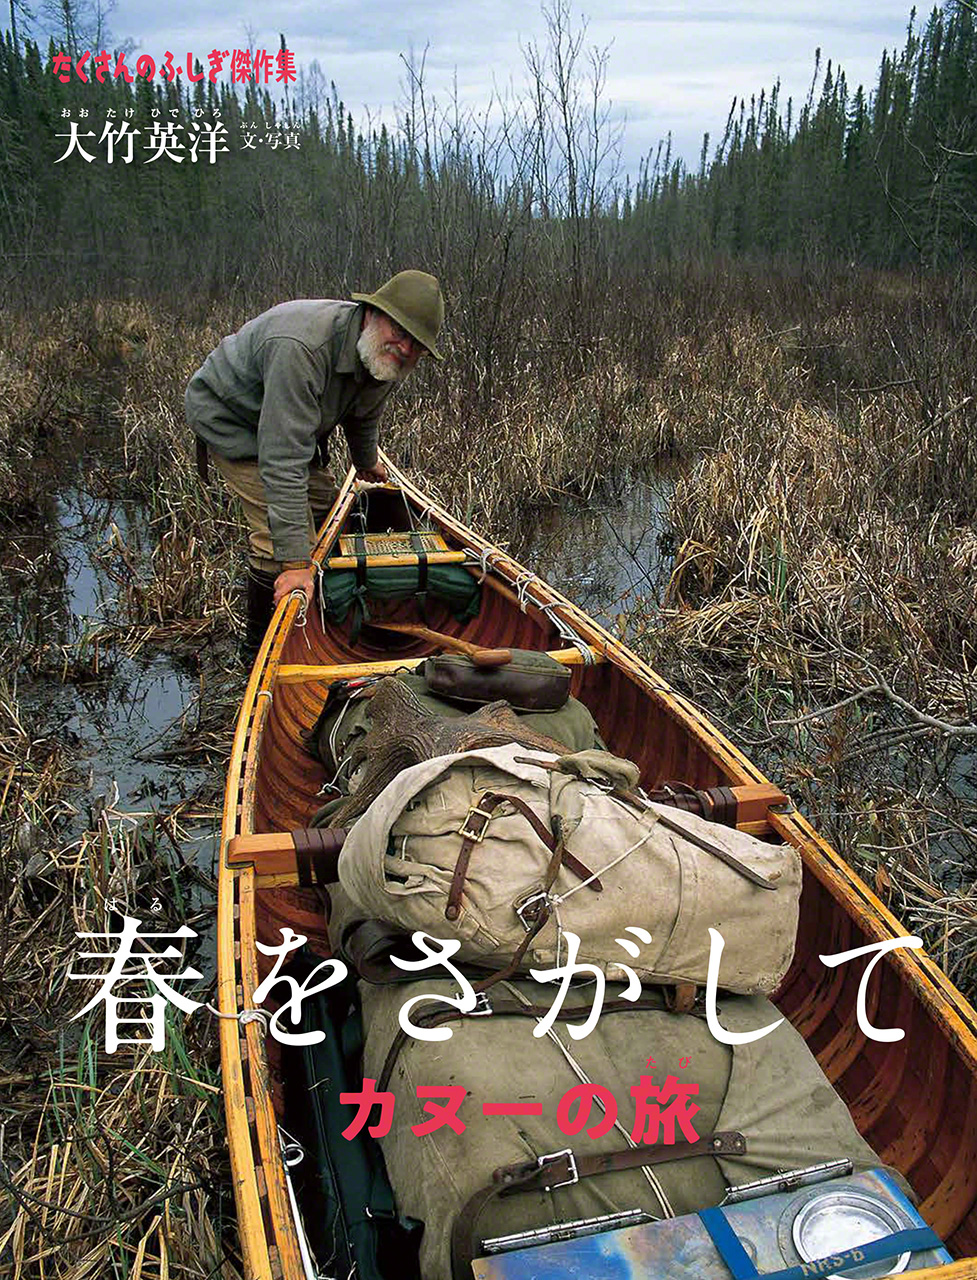 « À la recherche du printemps en canoë » (Haru wo sagashite: canoë no tabi), une édition spéciale de 2020 de la revue « Un monde de merveilles » (Takusan no fushigi).